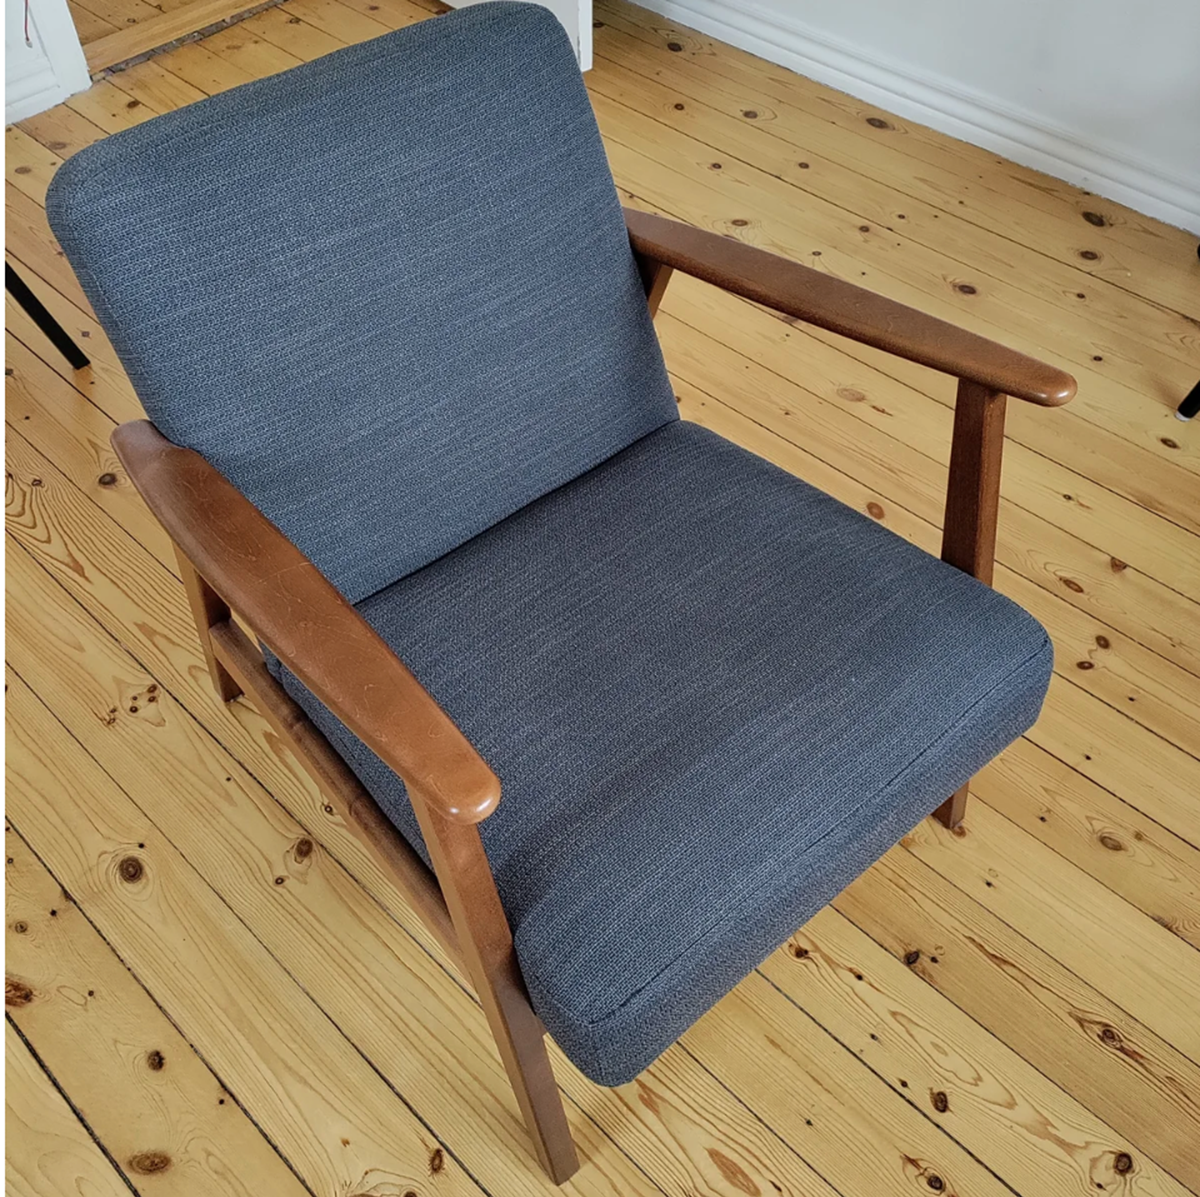 Lænestolen her sælger Rasmus fra København til 900 kroner.